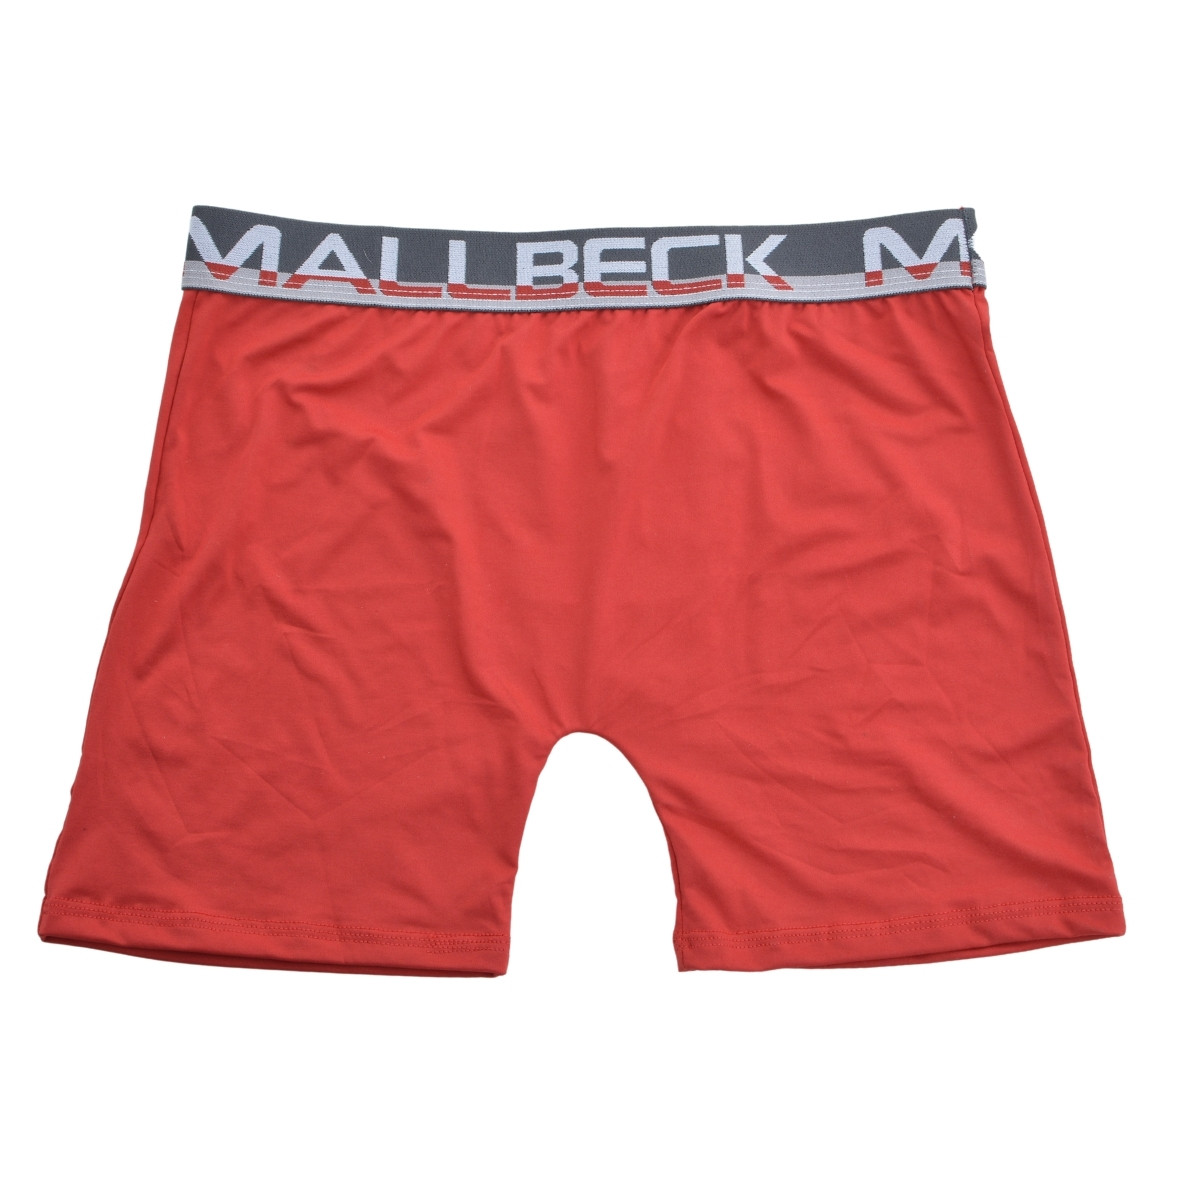 Cueca Boxer Micro Ciclista-Mallbeck-Ref:31